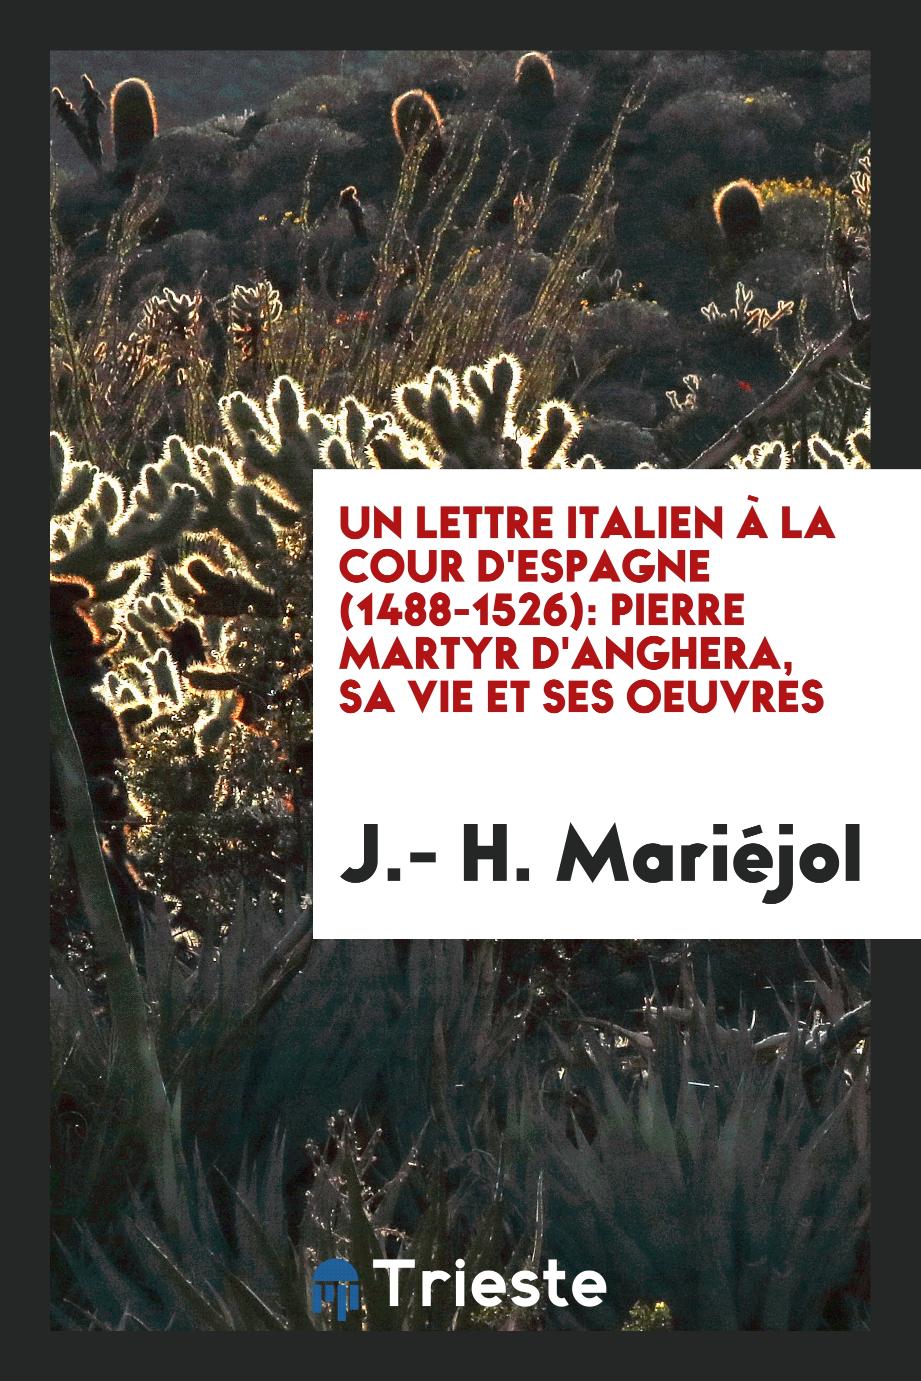 Un lettre italien à la cour d'Espagne (1488-1526): Pierre Martyr d'Anghera, sa vie et ses oeuvres